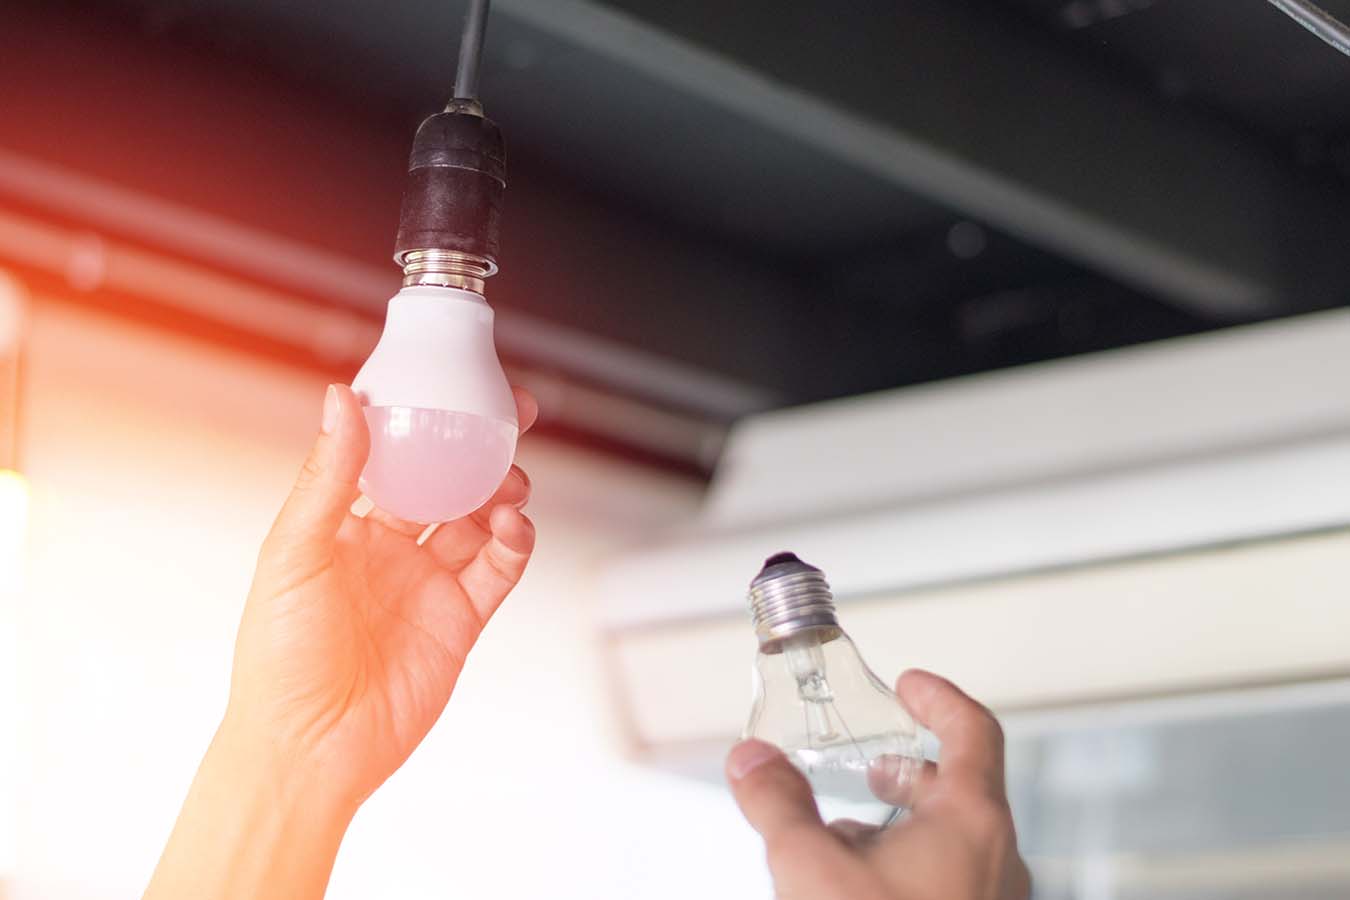 Korszerű otthon LED világítással – Előnyök a normál izzókkal szemben